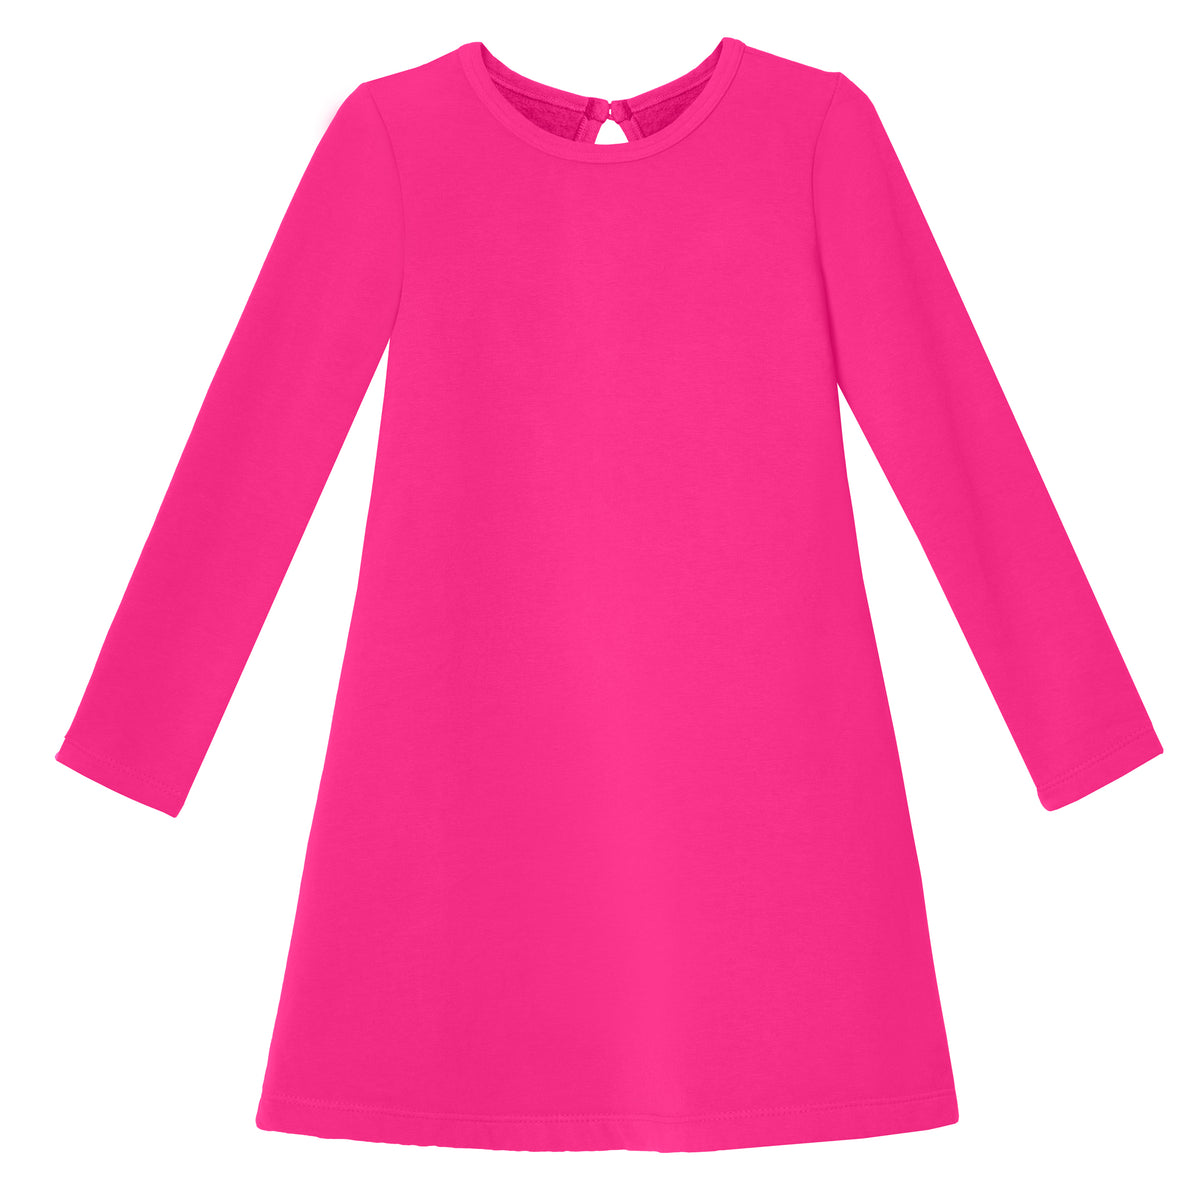 Girls Lightweight Soft Cotton Fleece A-Line Dress| Hot Pink